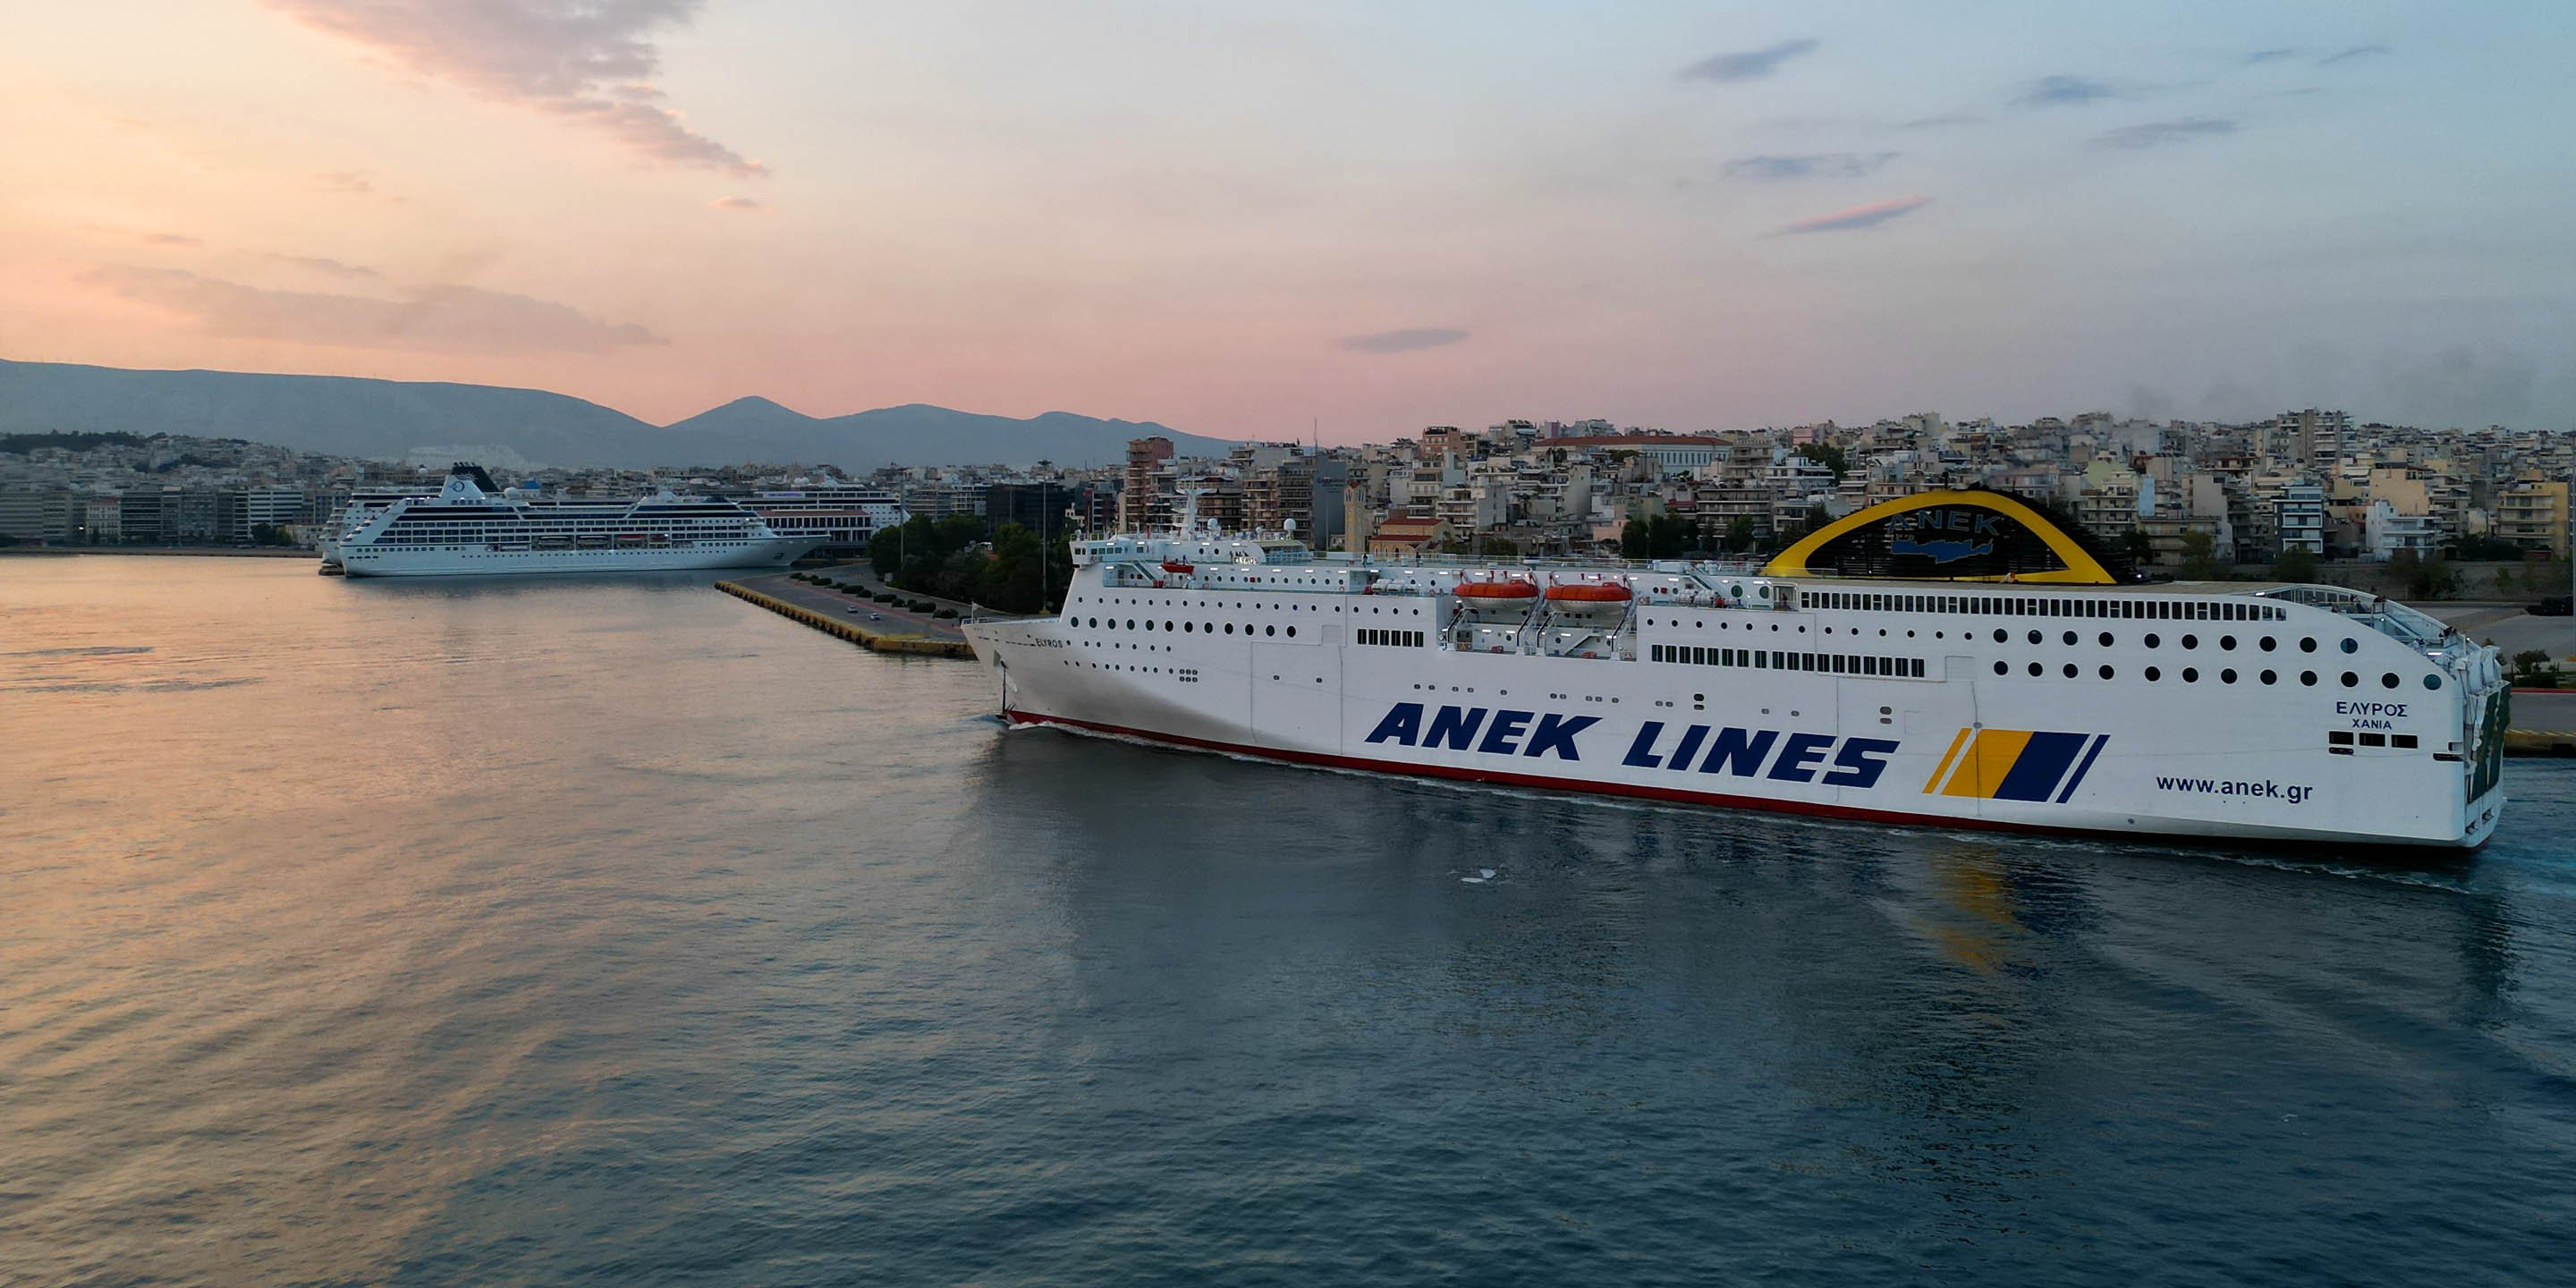 Le ferry conventionnel Elyros dans le port du Pirée, se préparant à partir pour la ville de La Canée en Crète